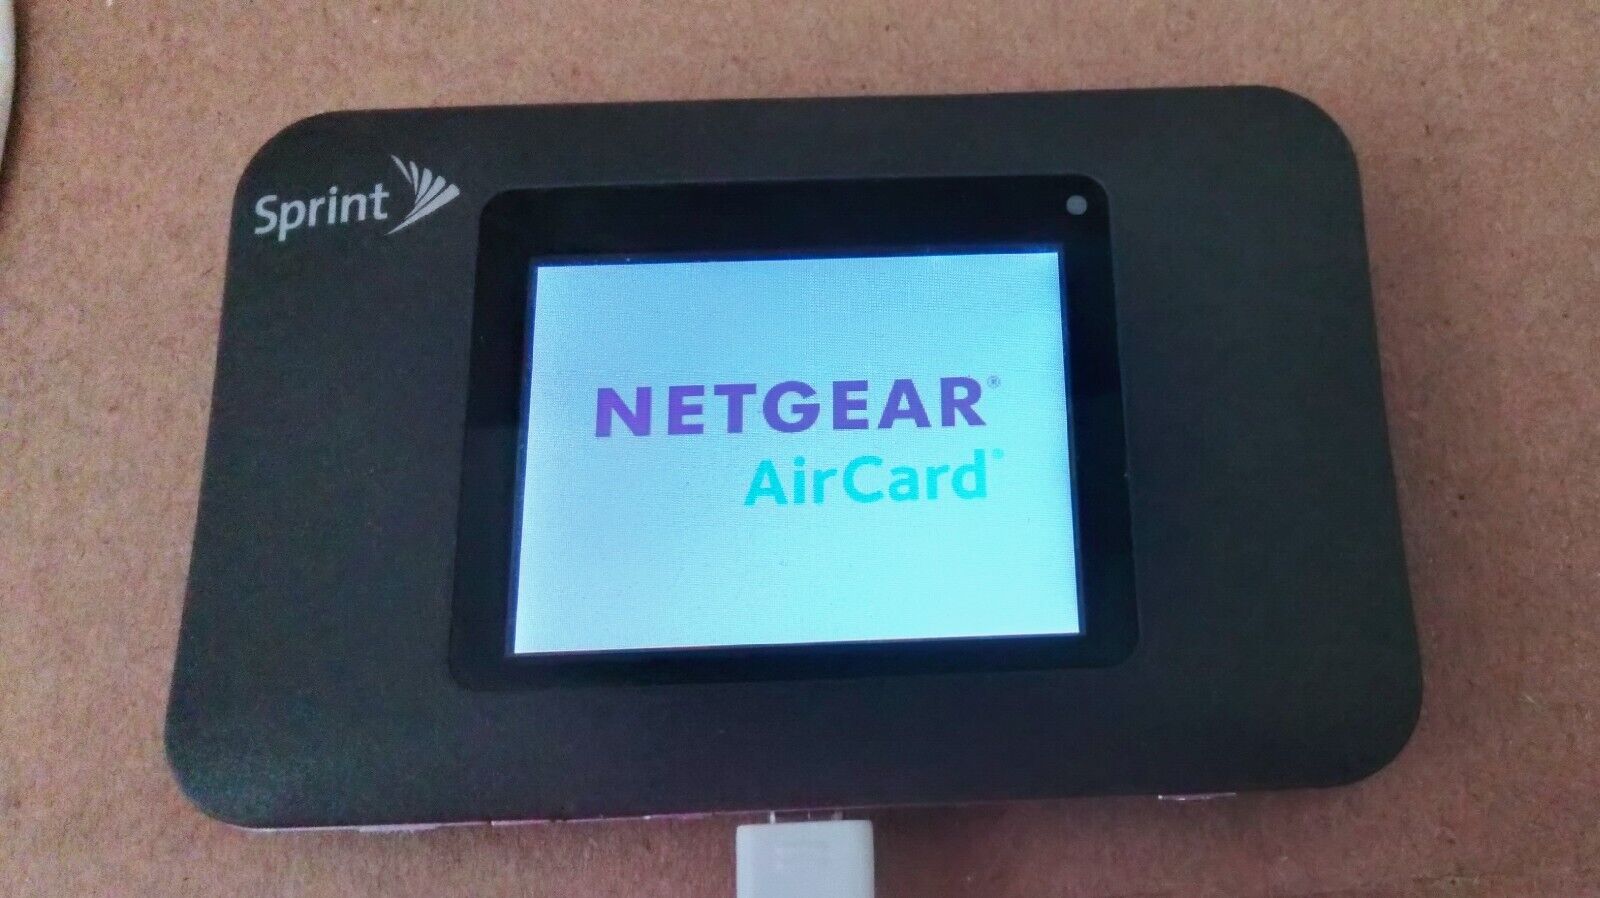 Netgear AirCard Sprint Zing 771S WiFi Broadband Mobile Hotspot